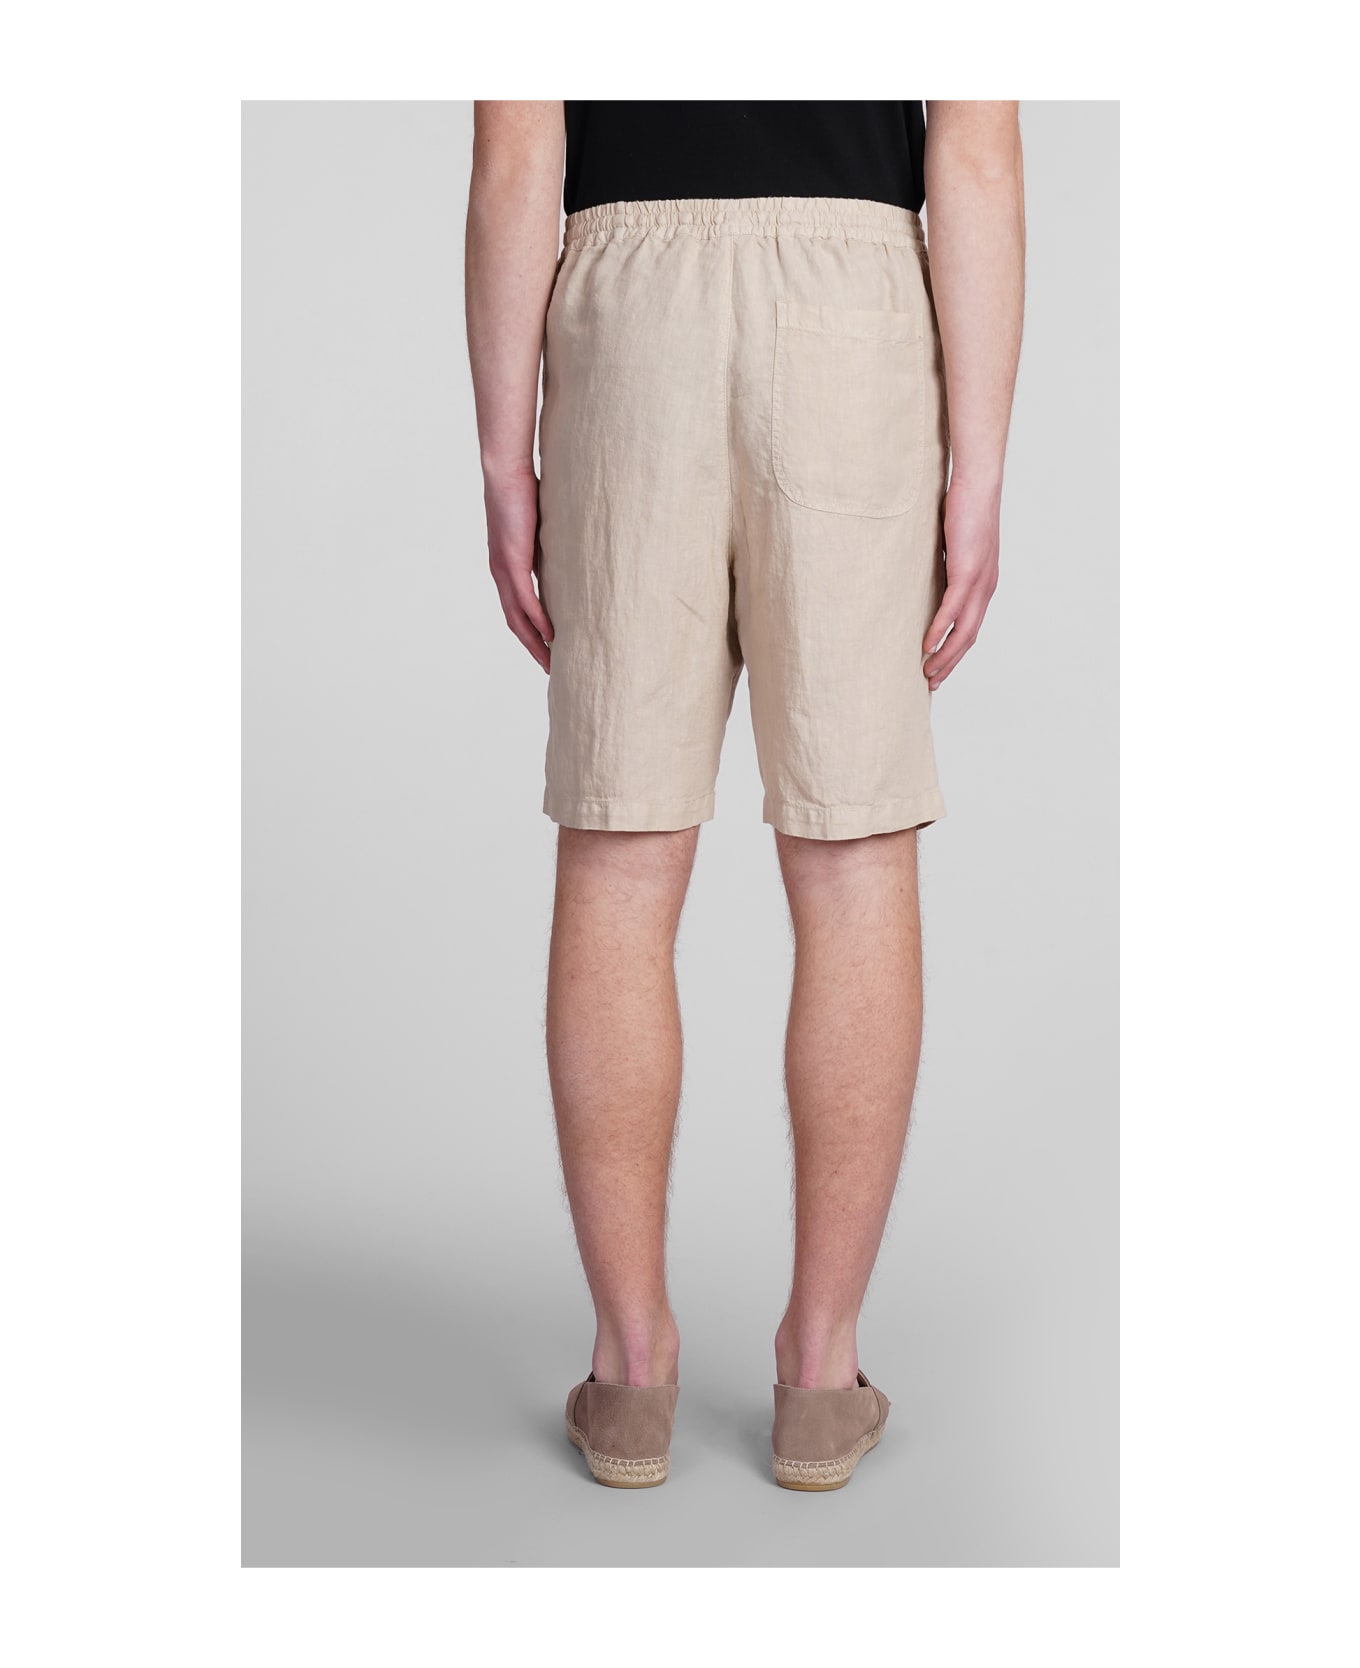 120% Lino Shorts In Beige Linen - Nut